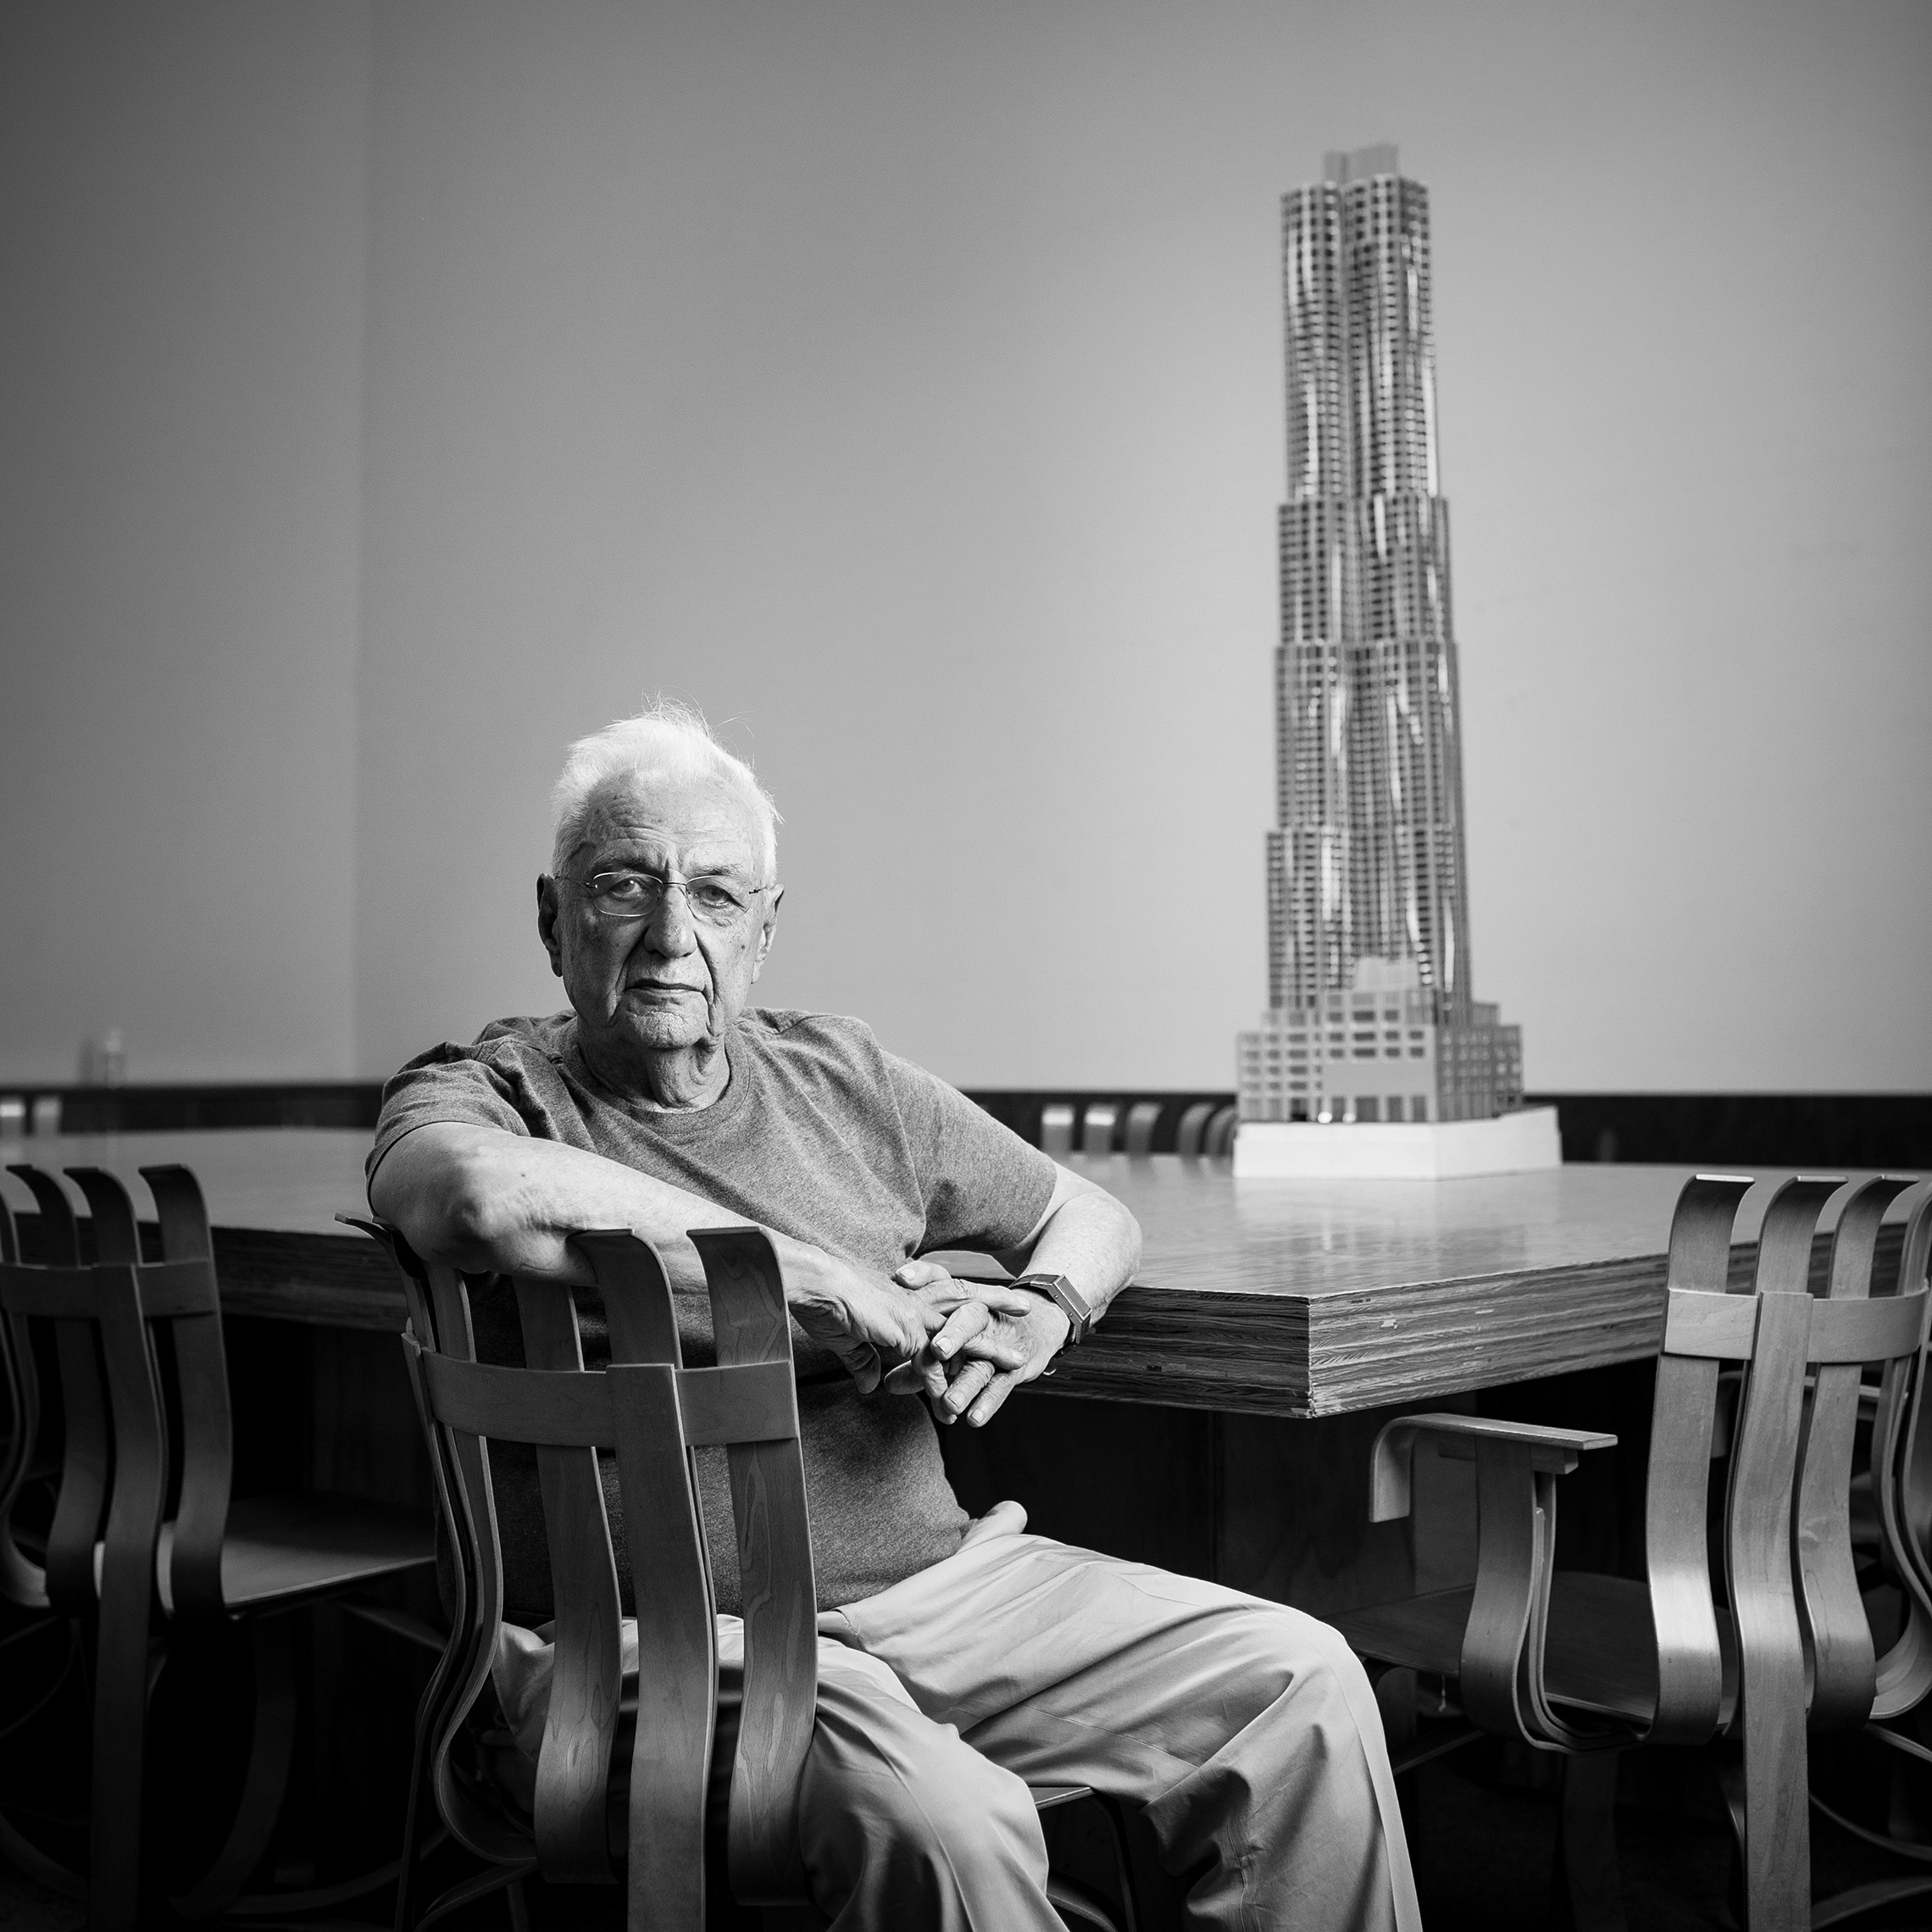 Гэри фрэнк. Фрэнк Гери. Фрэнк Гери (1929 г.). Фрэнк Гери (Frank Gehry). Frank Gehry Архитектор.